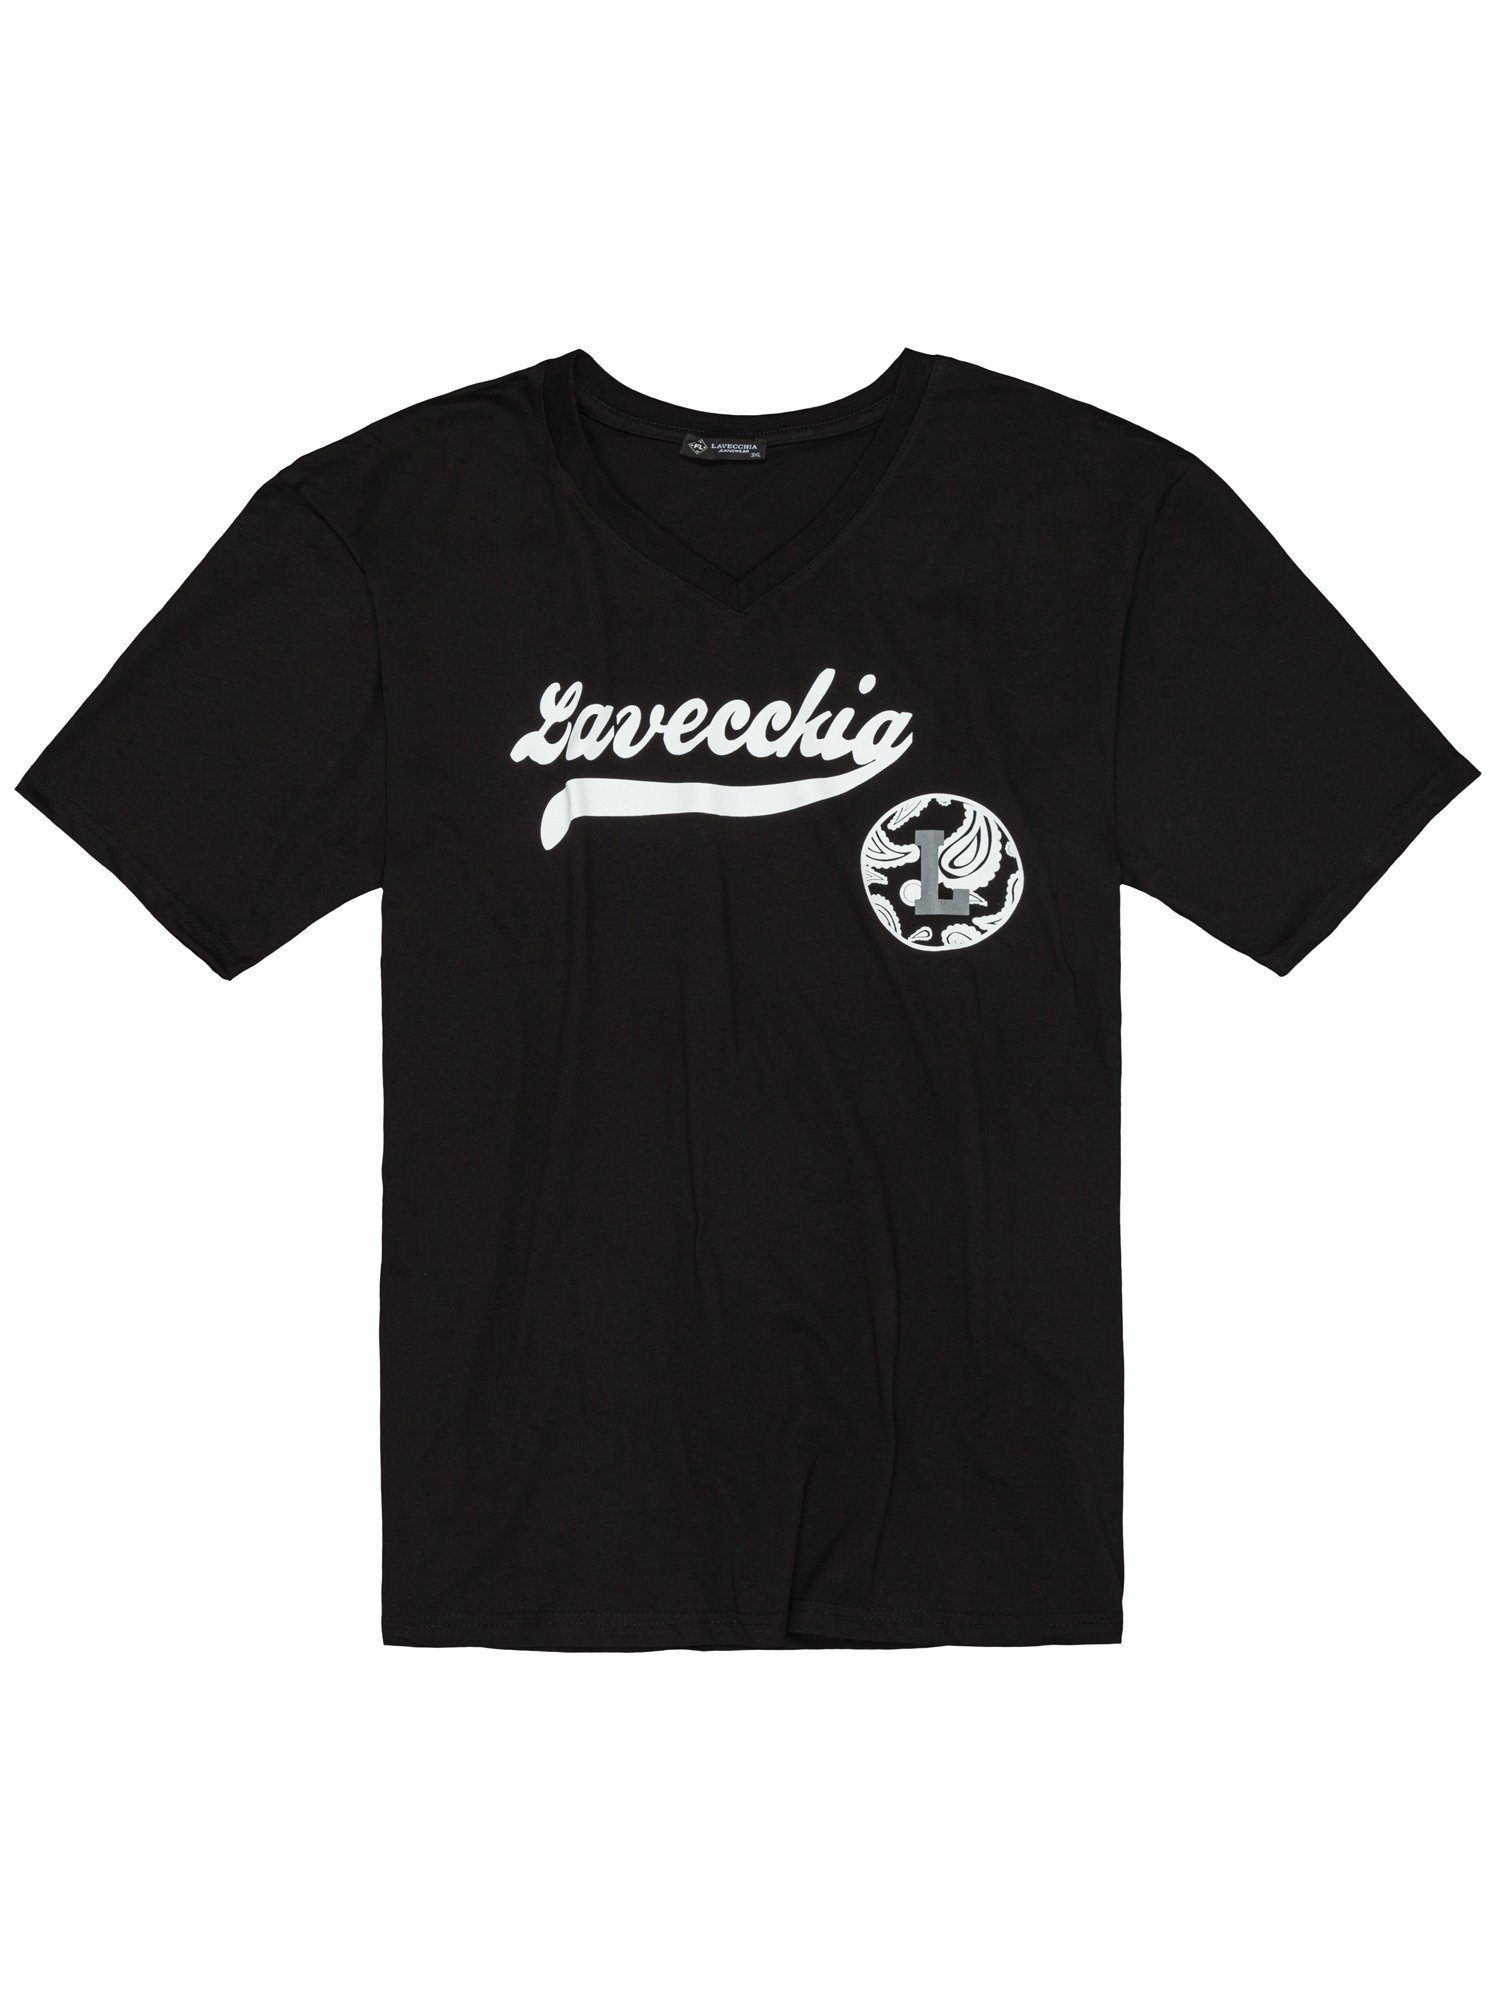 Lavecchia T-Shirt Übergrößen Herren V-Shirt LV-9900 Herrenshirt V-Ausschnitt